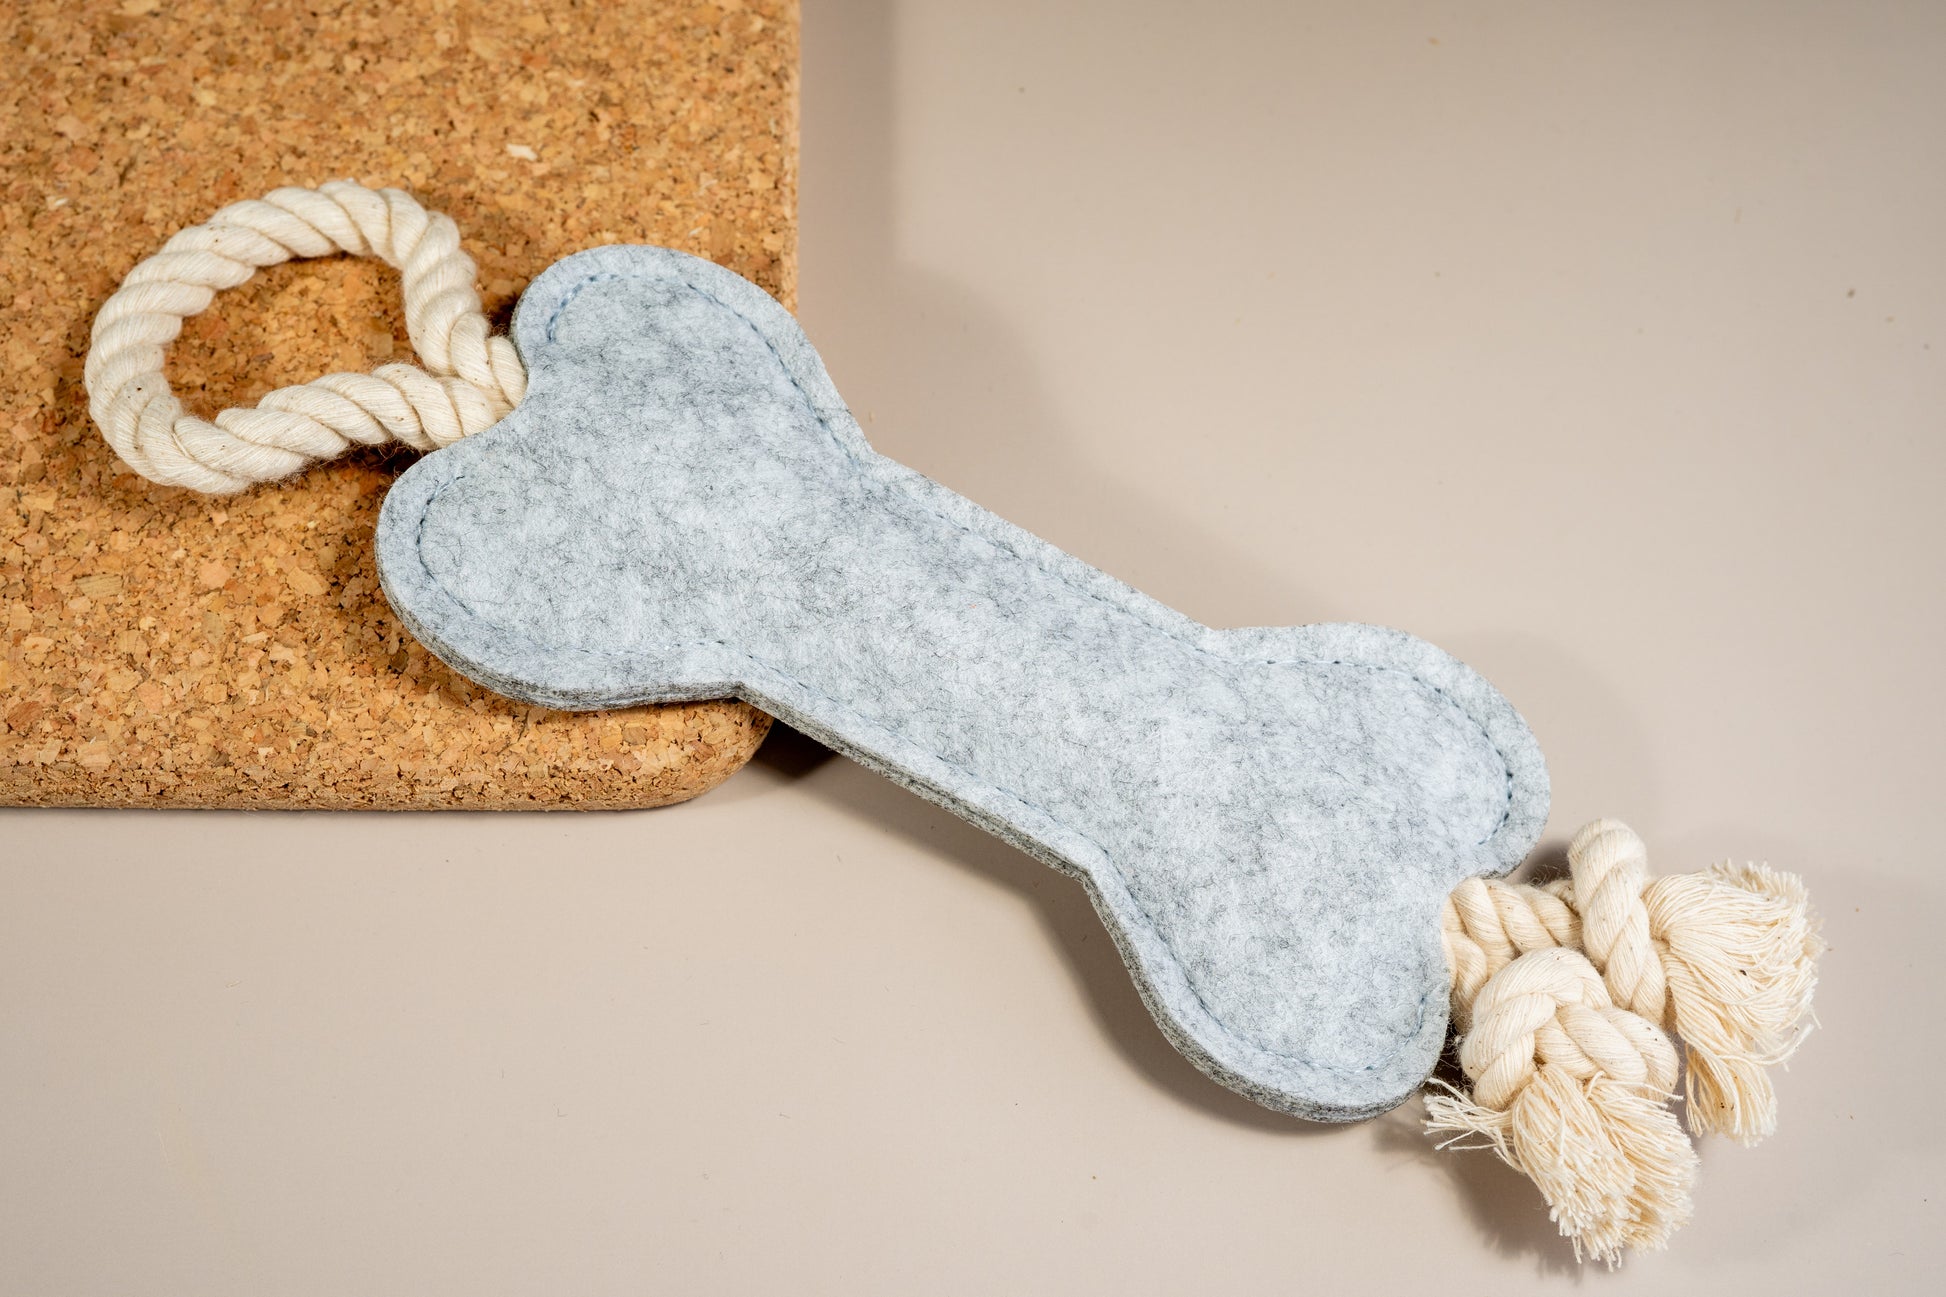 Pale gray felt bone dog toy with rope at the ends placed on a cork board. | Jouet pour chien en os de feutre gris pâle avec une corde aux extrémités placée sur un panneau en liège.